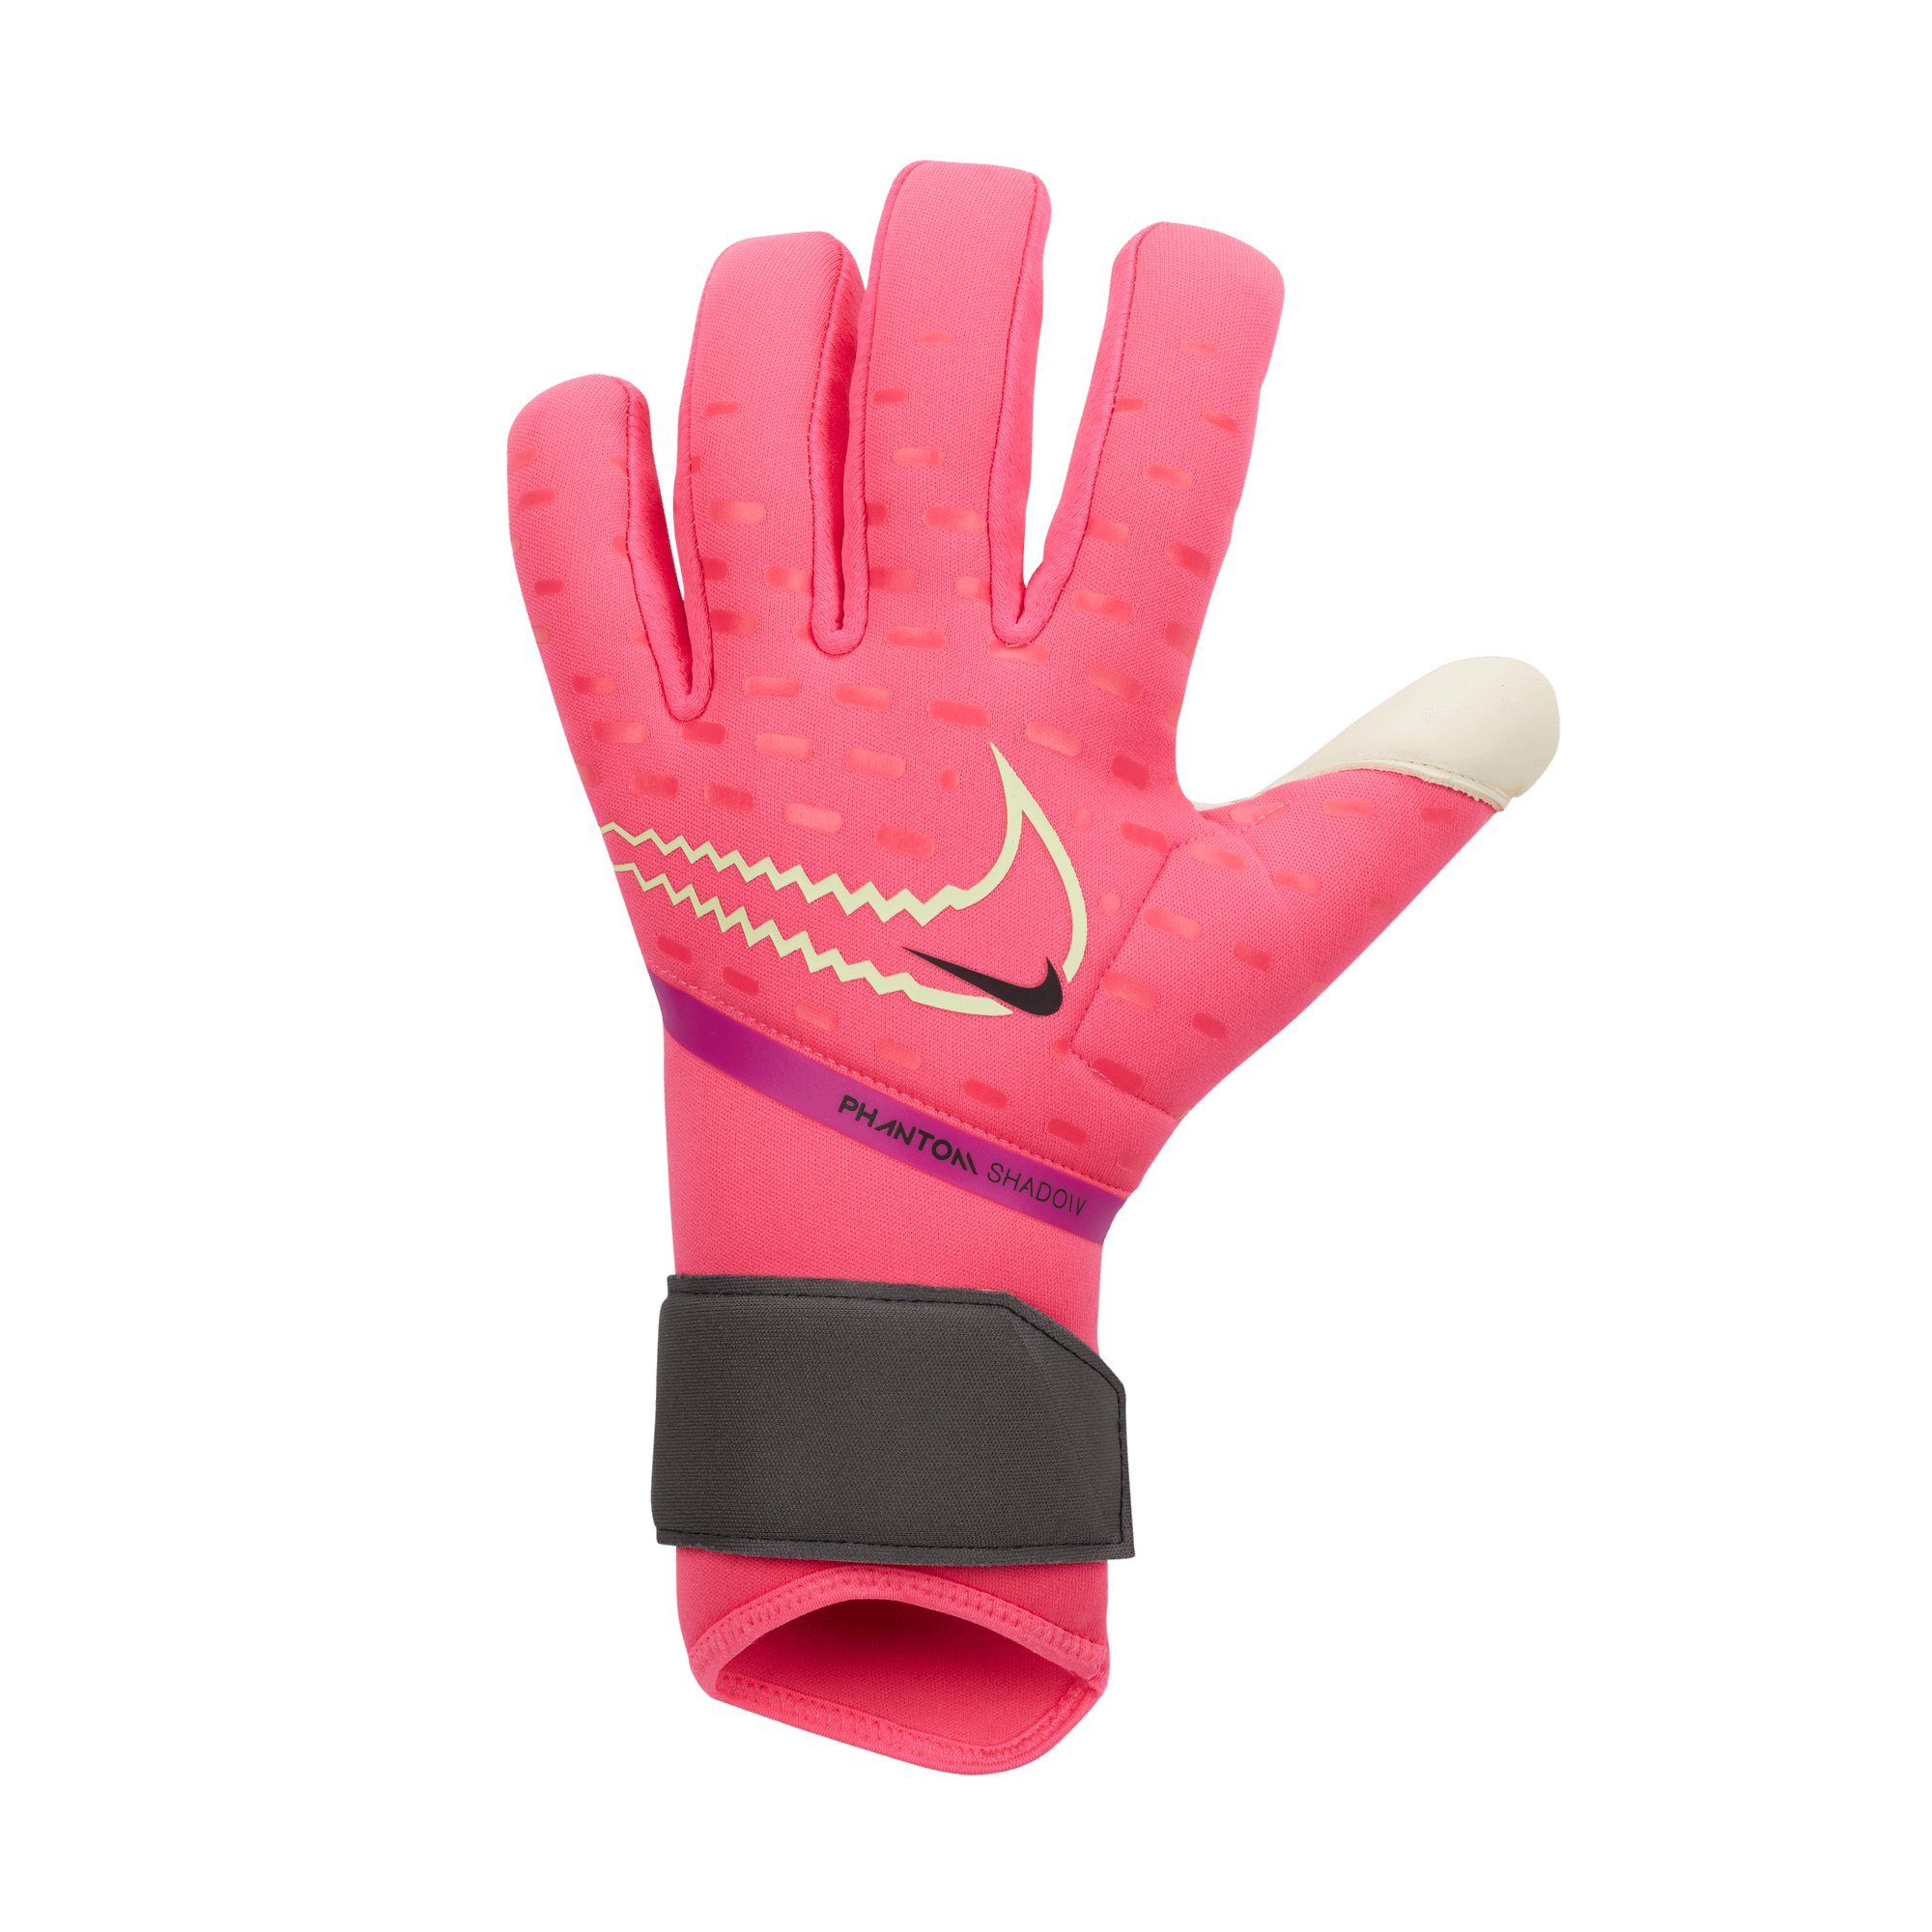 nike phantom shadow soccer goalkeeper gloves